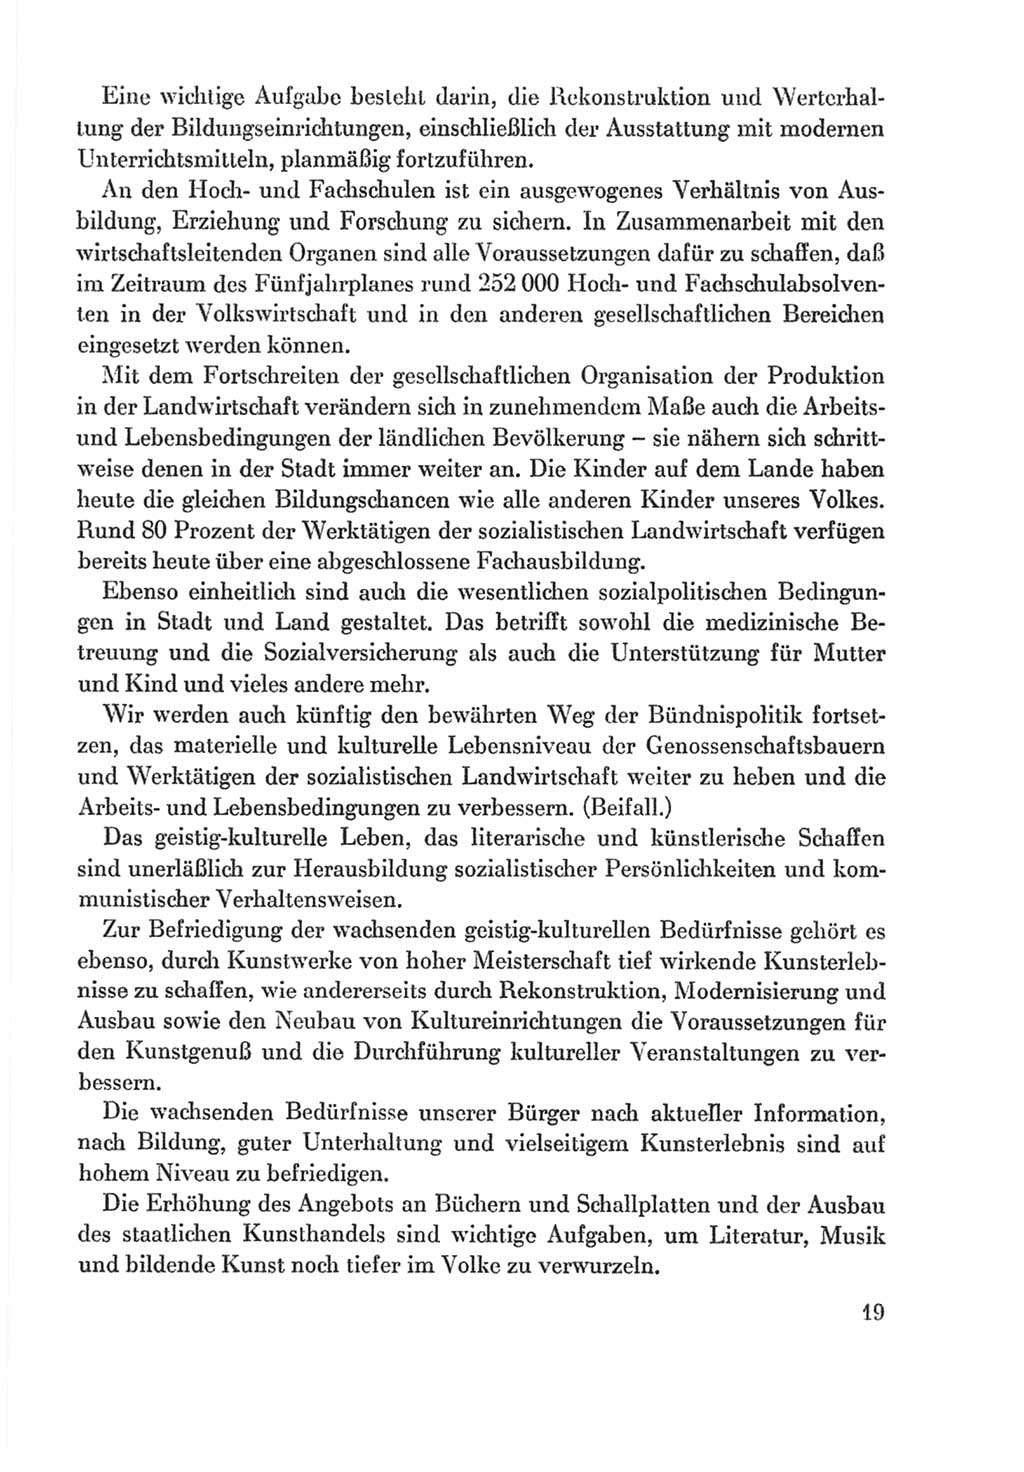 Protokoll der Verhandlungen des Ⅸ. Parteitages der Sozialistischen Einheitspartei Deutschlands (SED) [Deutsche Demokratische Republik (DDR)] 1976, Band 2, Seite 19 (Prot. Verh. Ⅸ. PT SED DDR 1976, Bd. 2, S. 19)